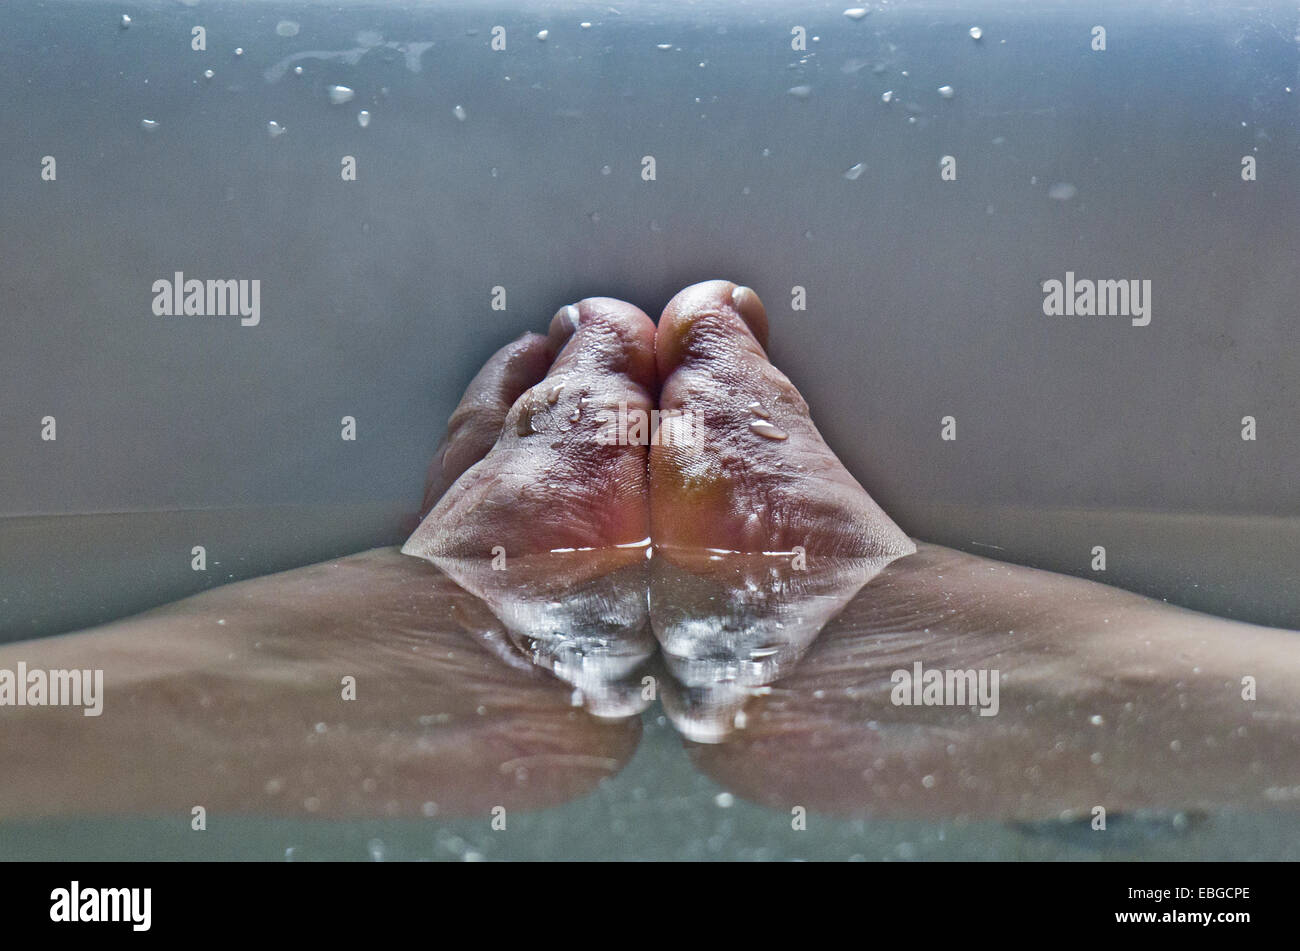 Les pieds d'un homme dans la baignoire. Banque D'Images